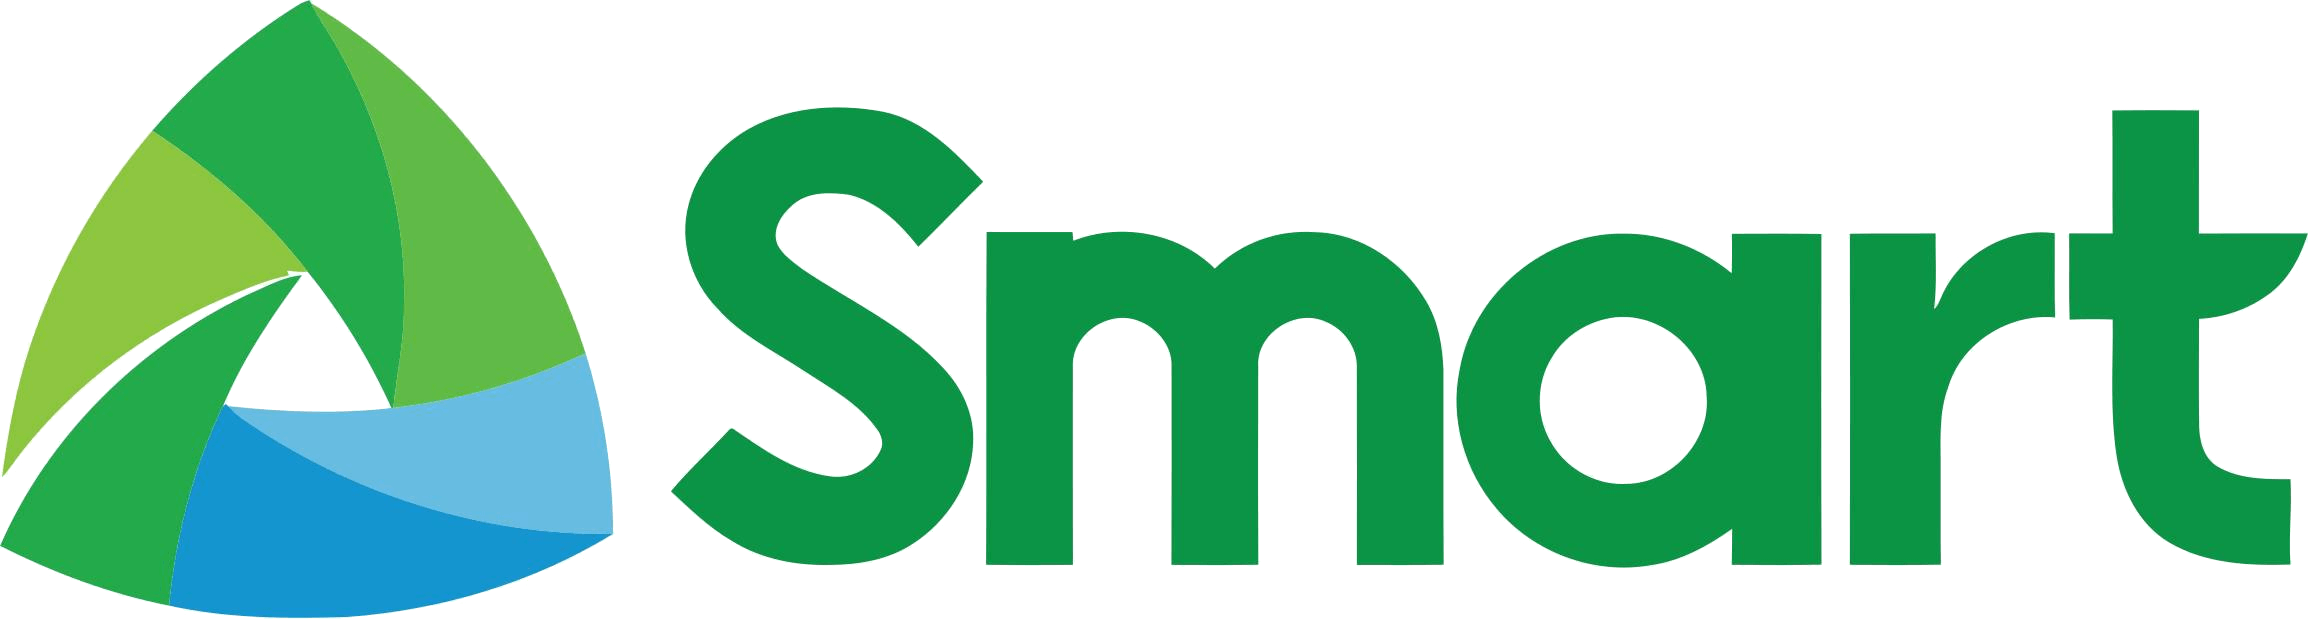 Smart_logo_PH.png